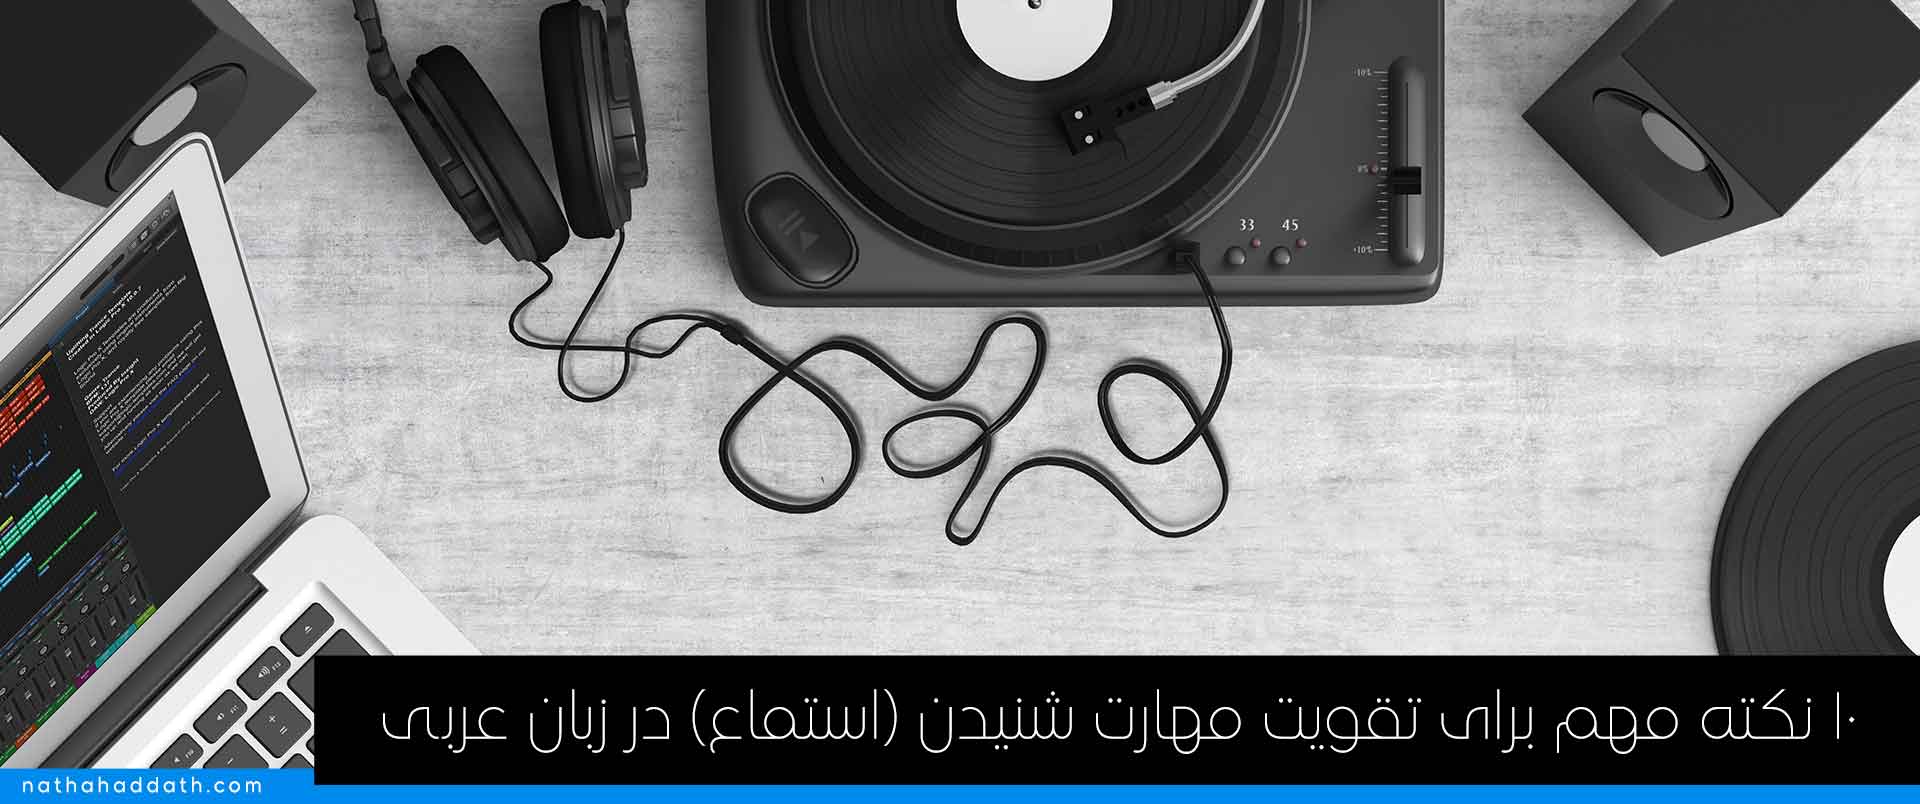 تقویت مهارت شنیدن (استماع) در زبان عربی